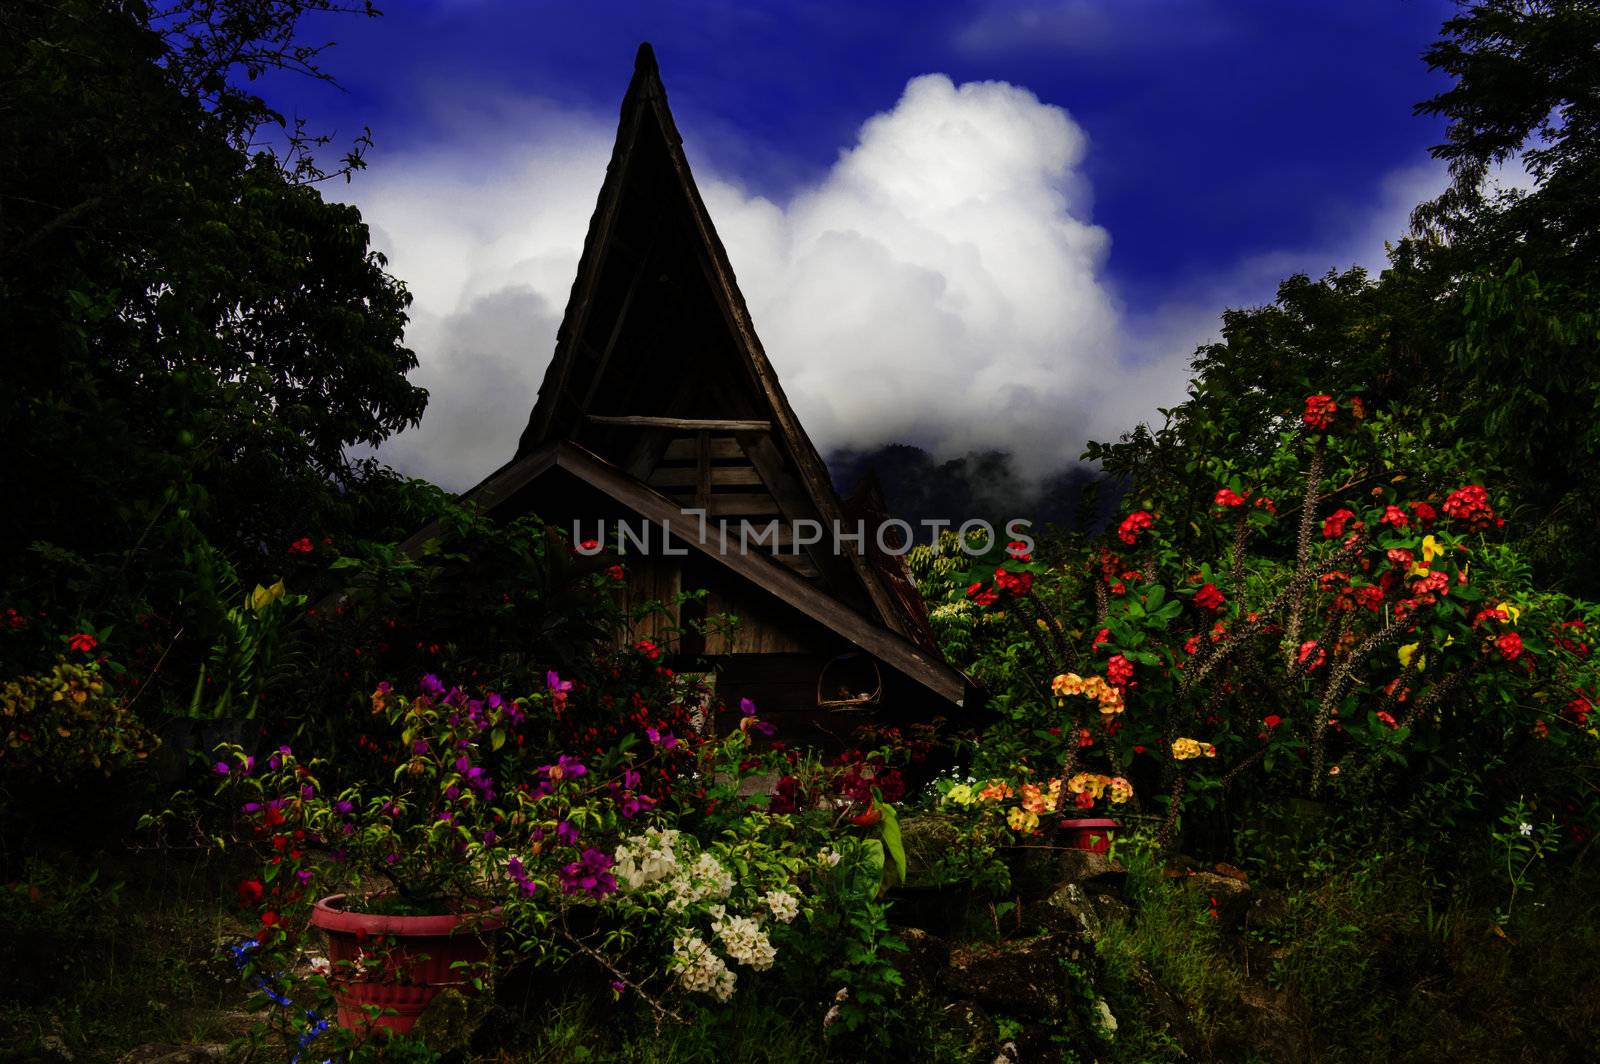 Flowers on background of batak style house.
Samosir Island, Lake Toba, North Sumatra, Indonesia.